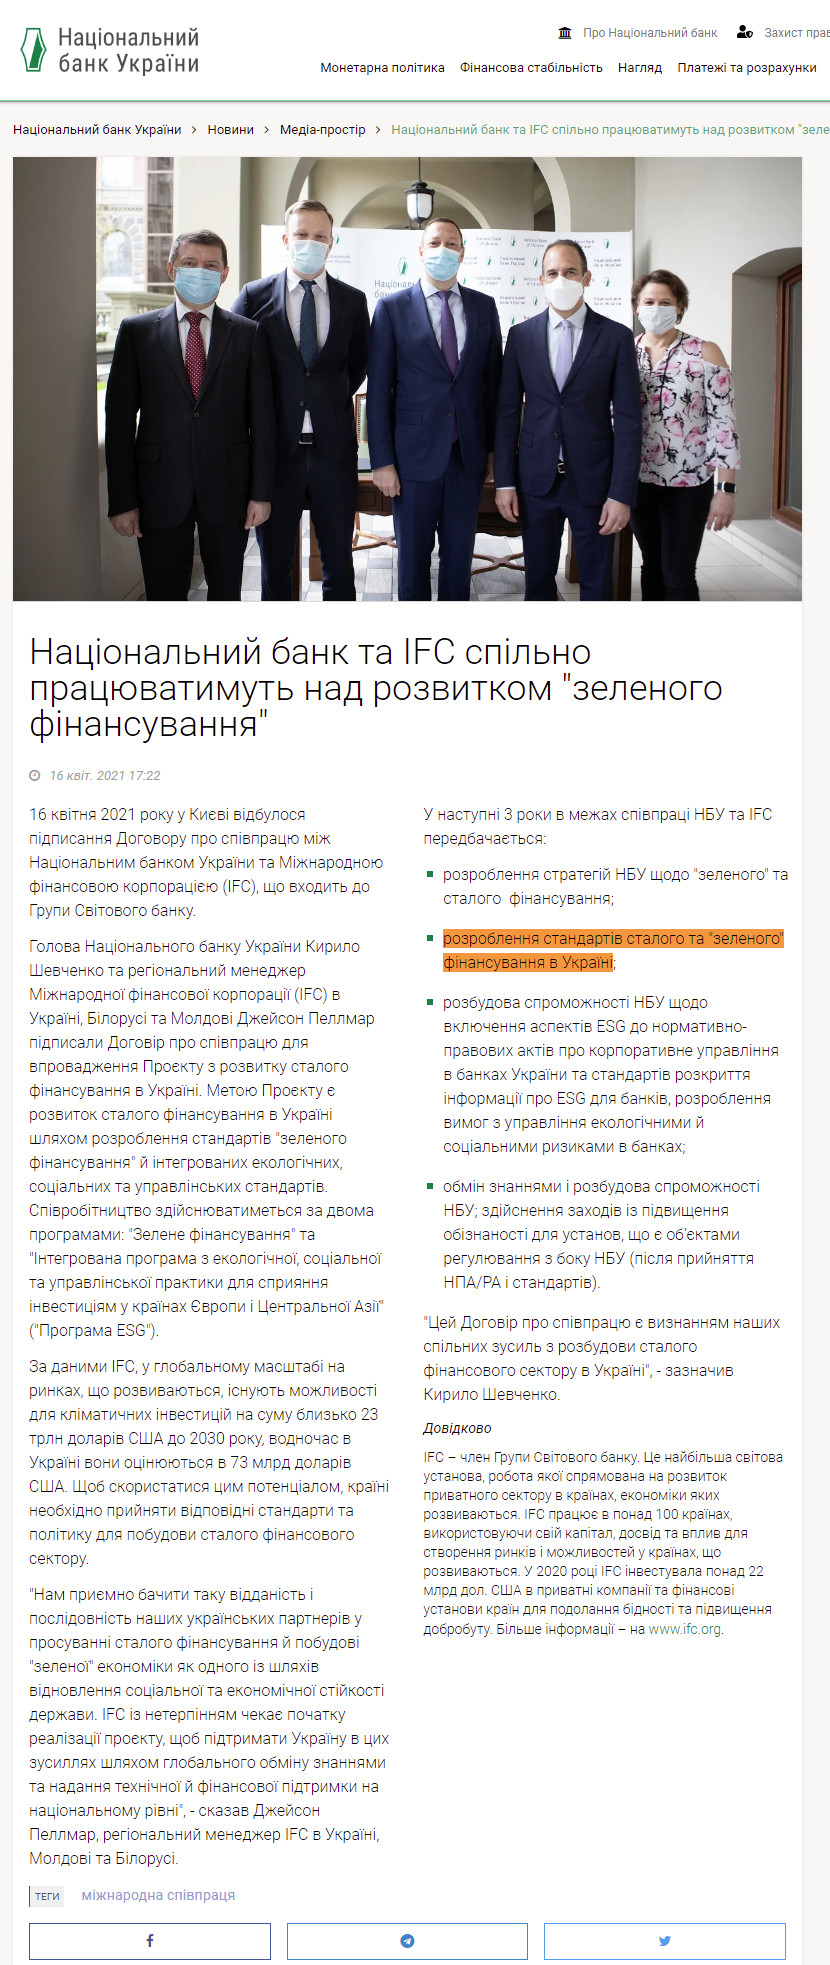 https://bank.gov.ua/ua/news/all/natsionalniy-bank-ta-ifc-spilno-pratsyuvatimut-nad-rozvitkom-zelenogo-finansuvannya